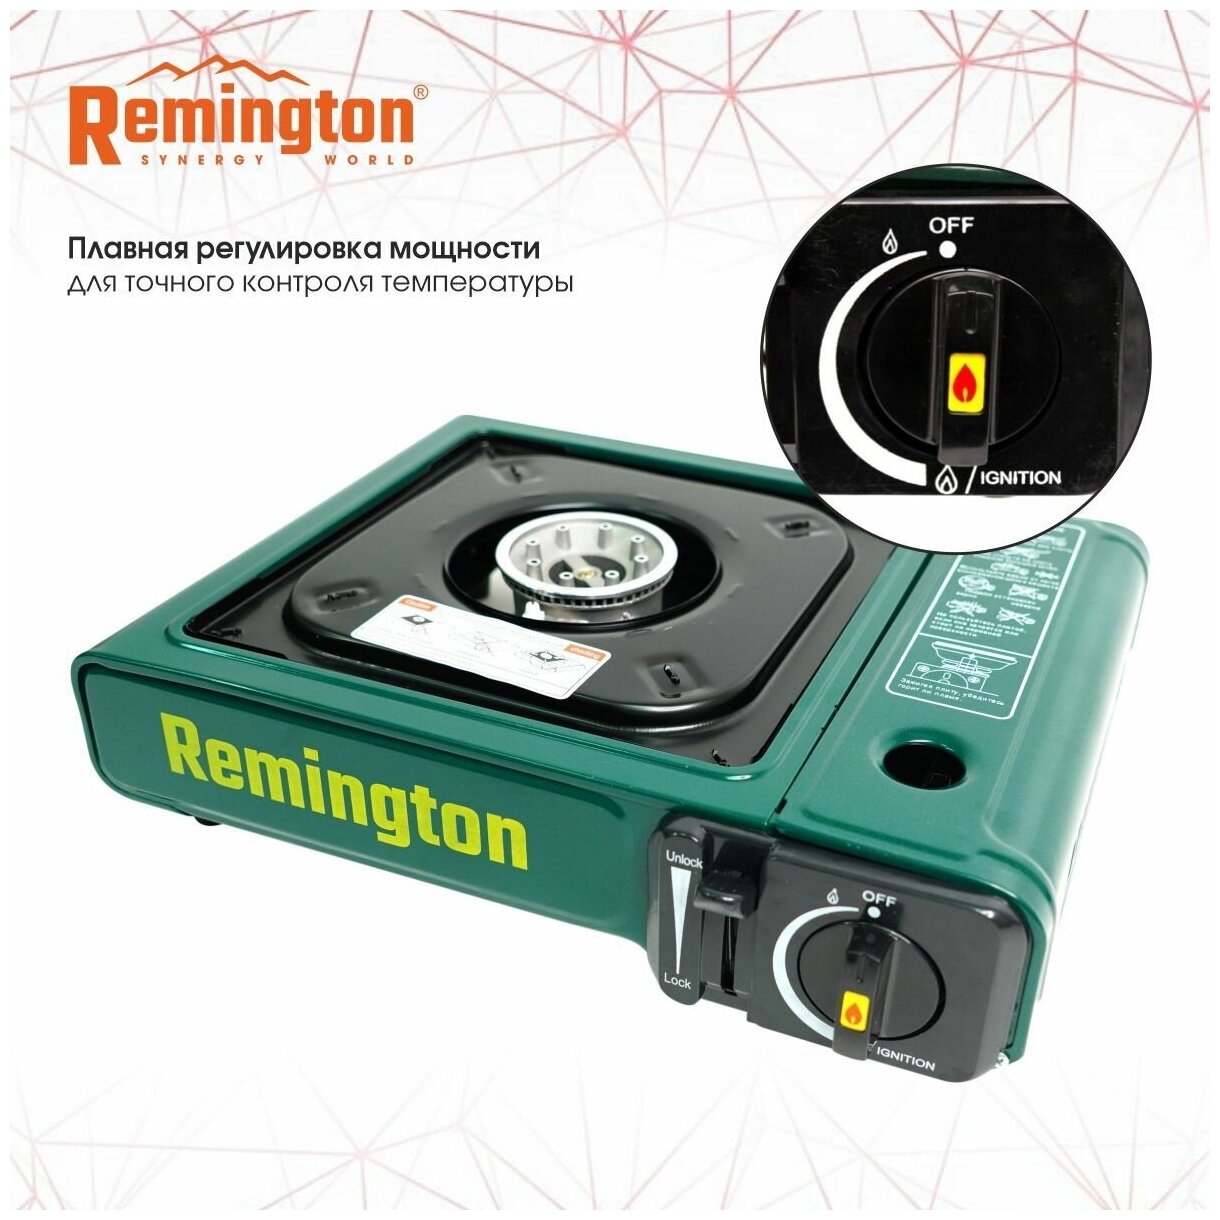 Плита Remington портативная газовая R-GS/BDZ 180A